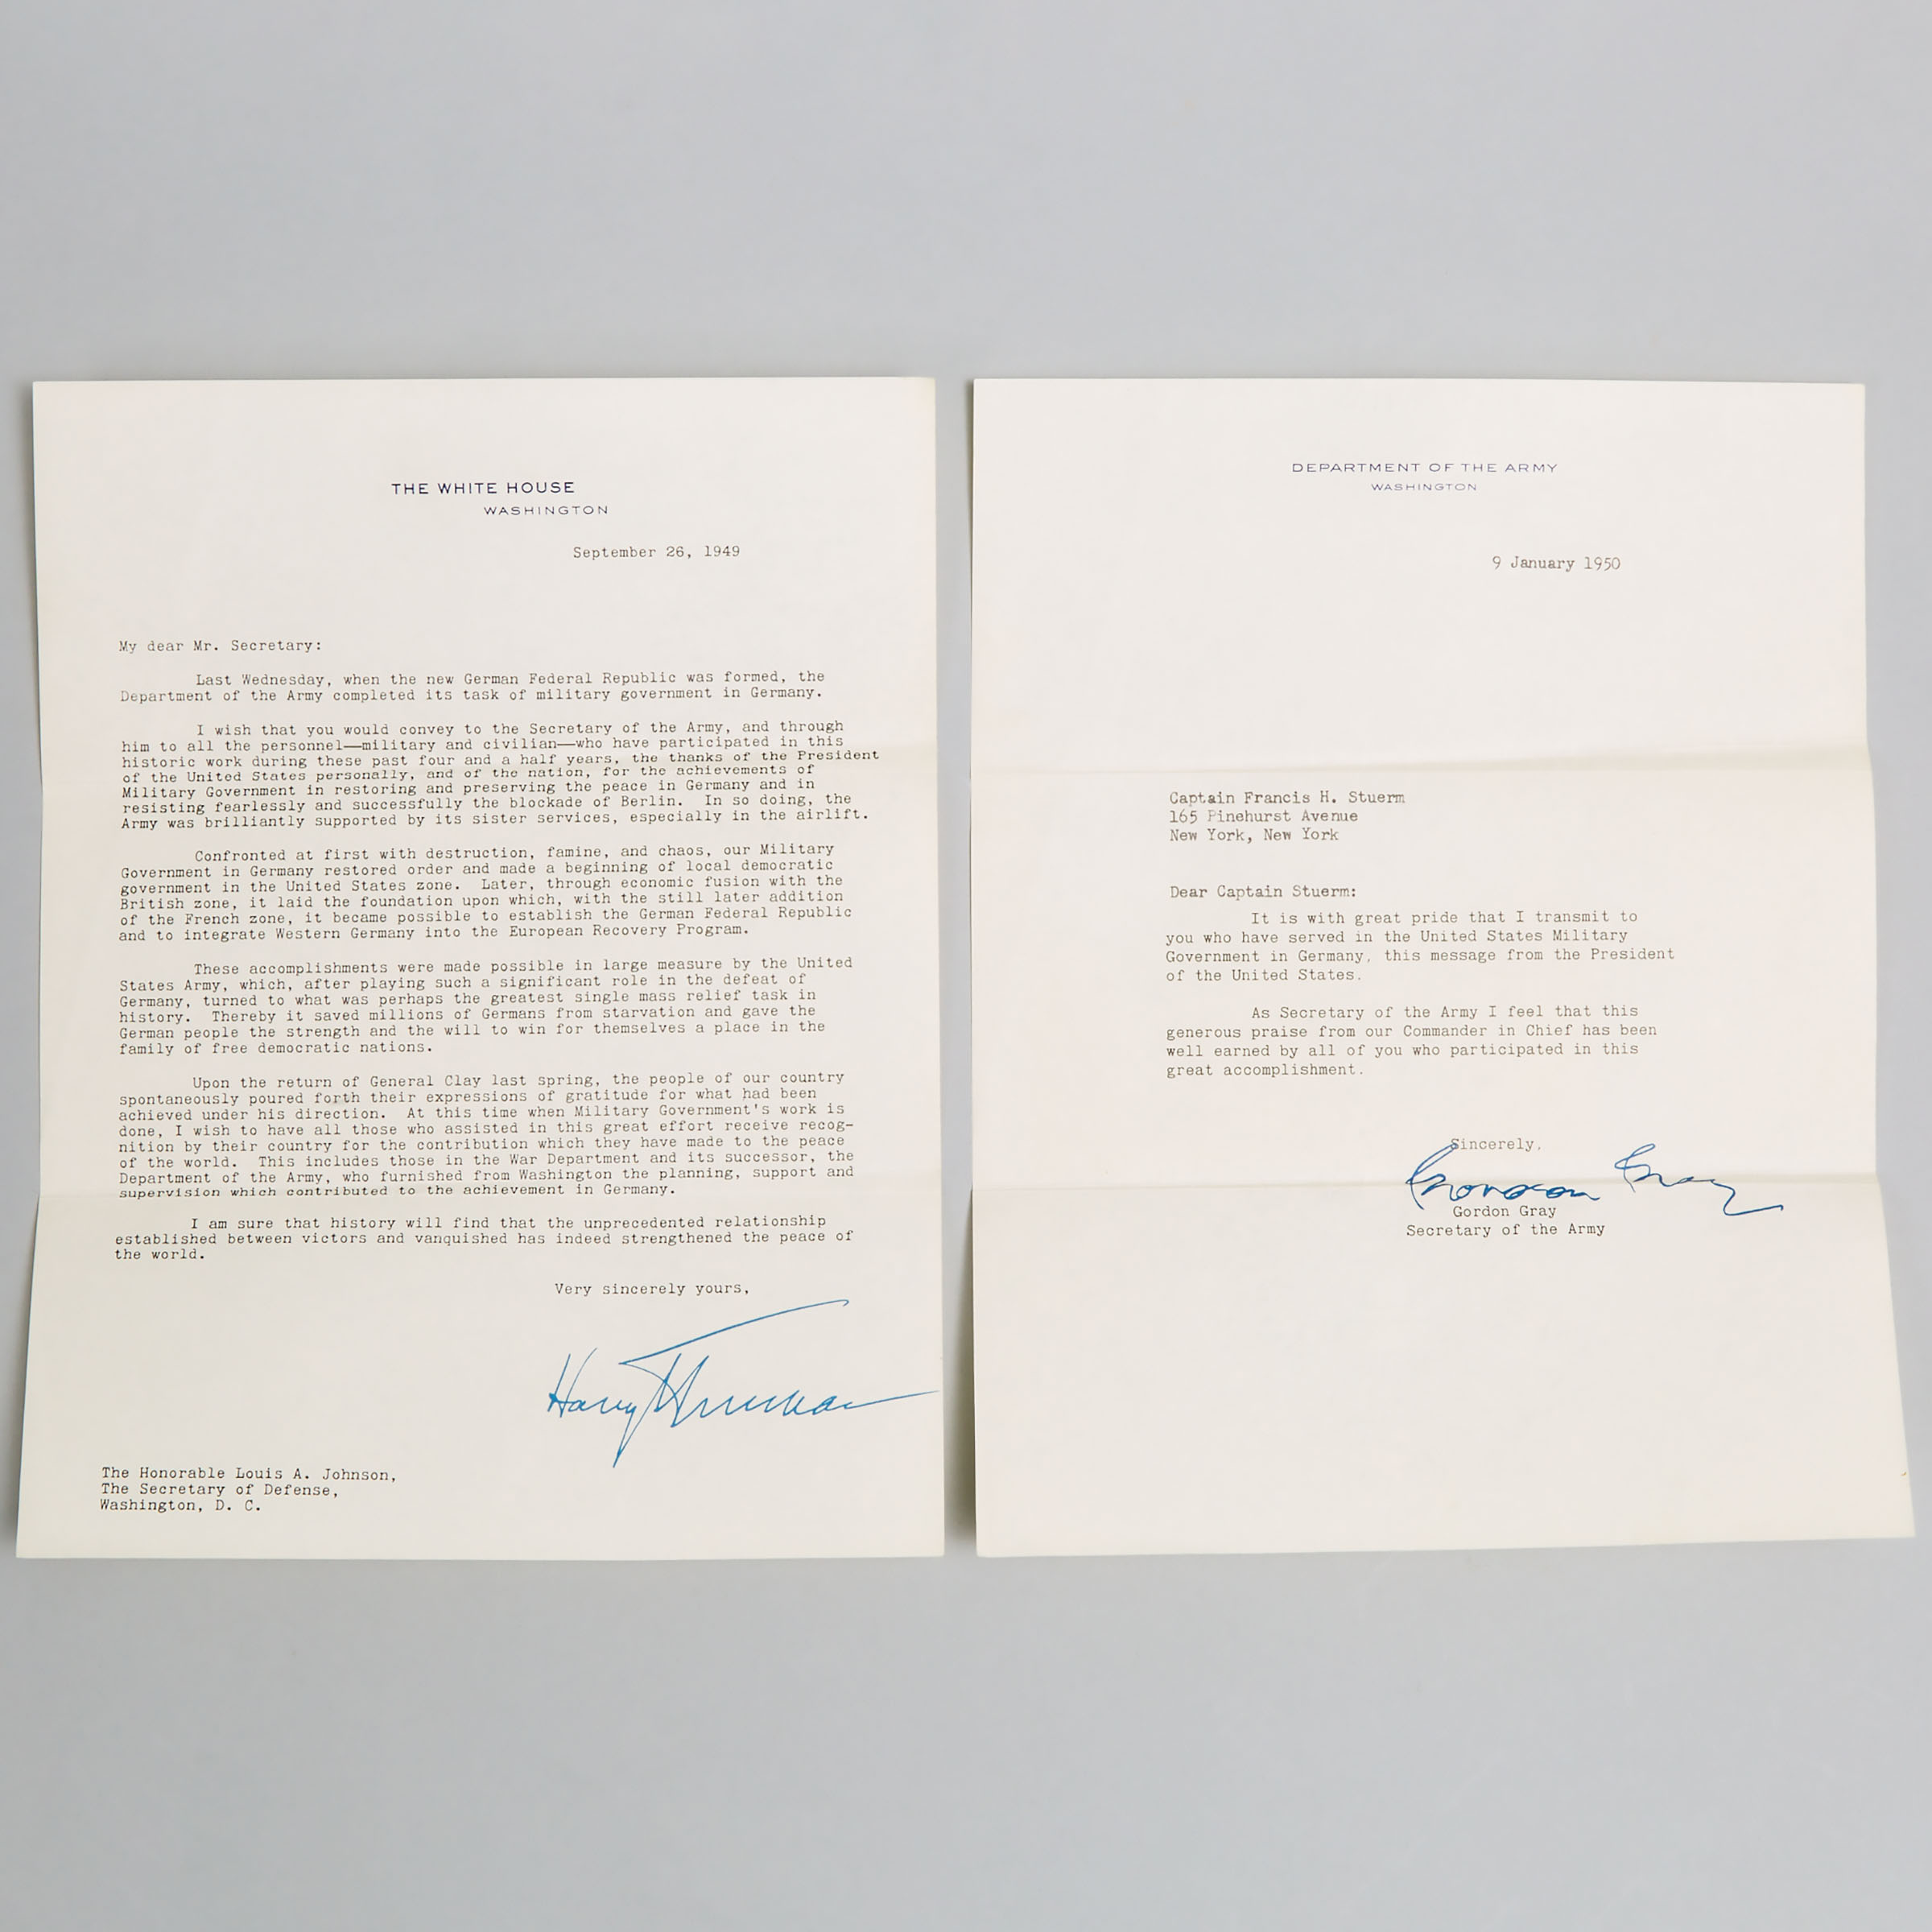 President Harry Truman Autopen Signed Letter, September 26, 1949